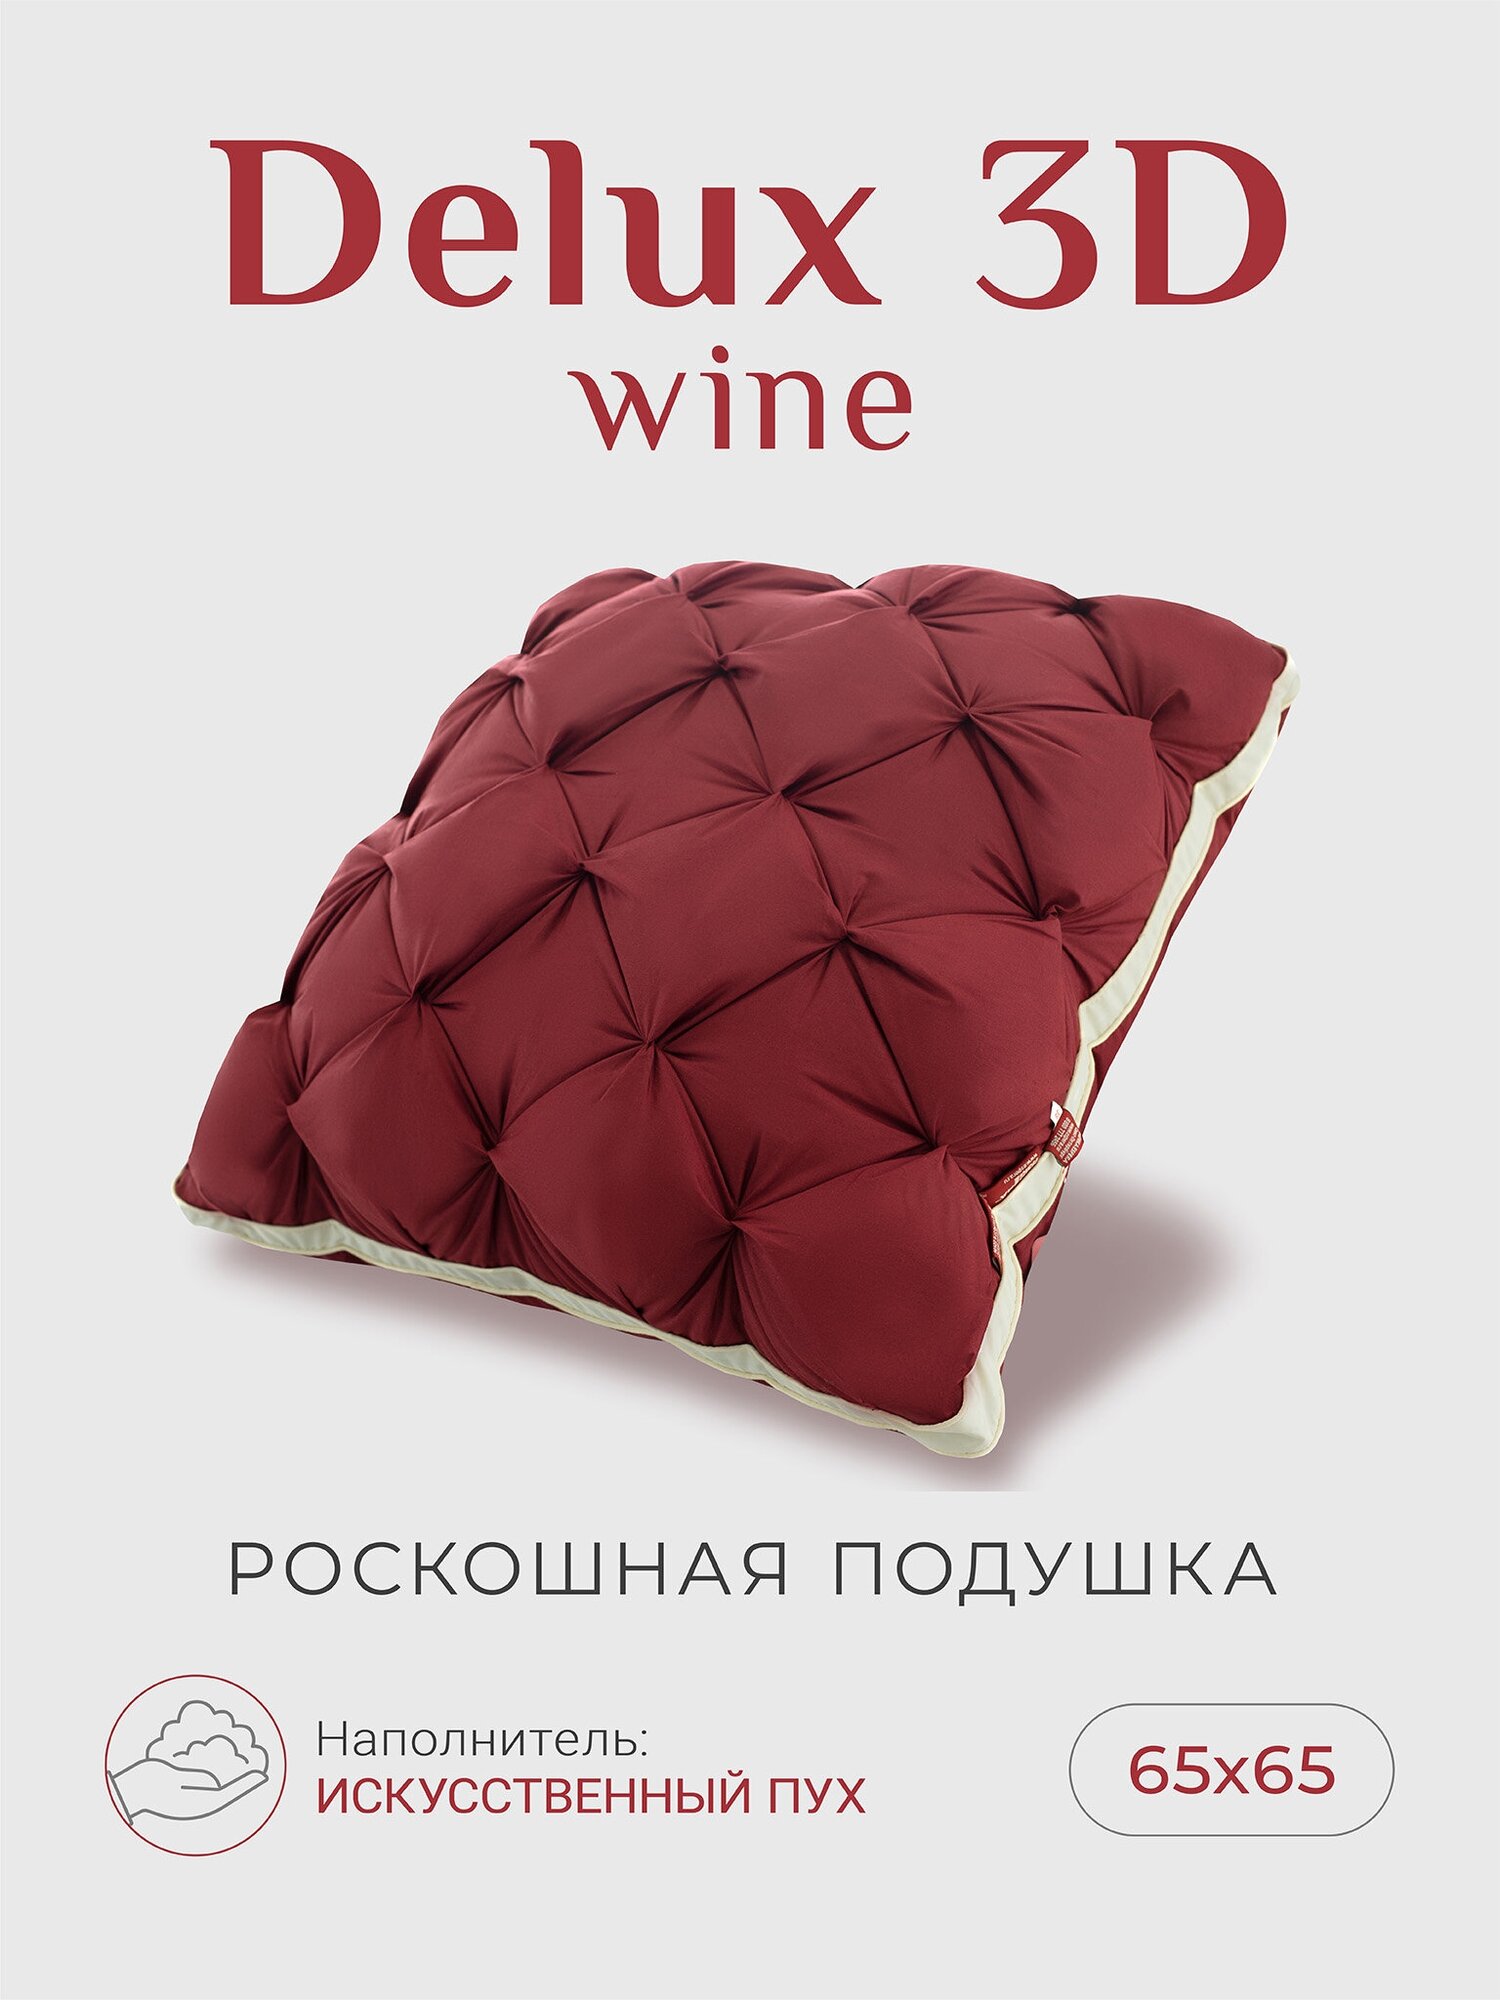 Подушка для сна "ESPERA DeLuxe 3D wine" 70х70см/Эспера делюкс wine 70х70см, 100% хлопок